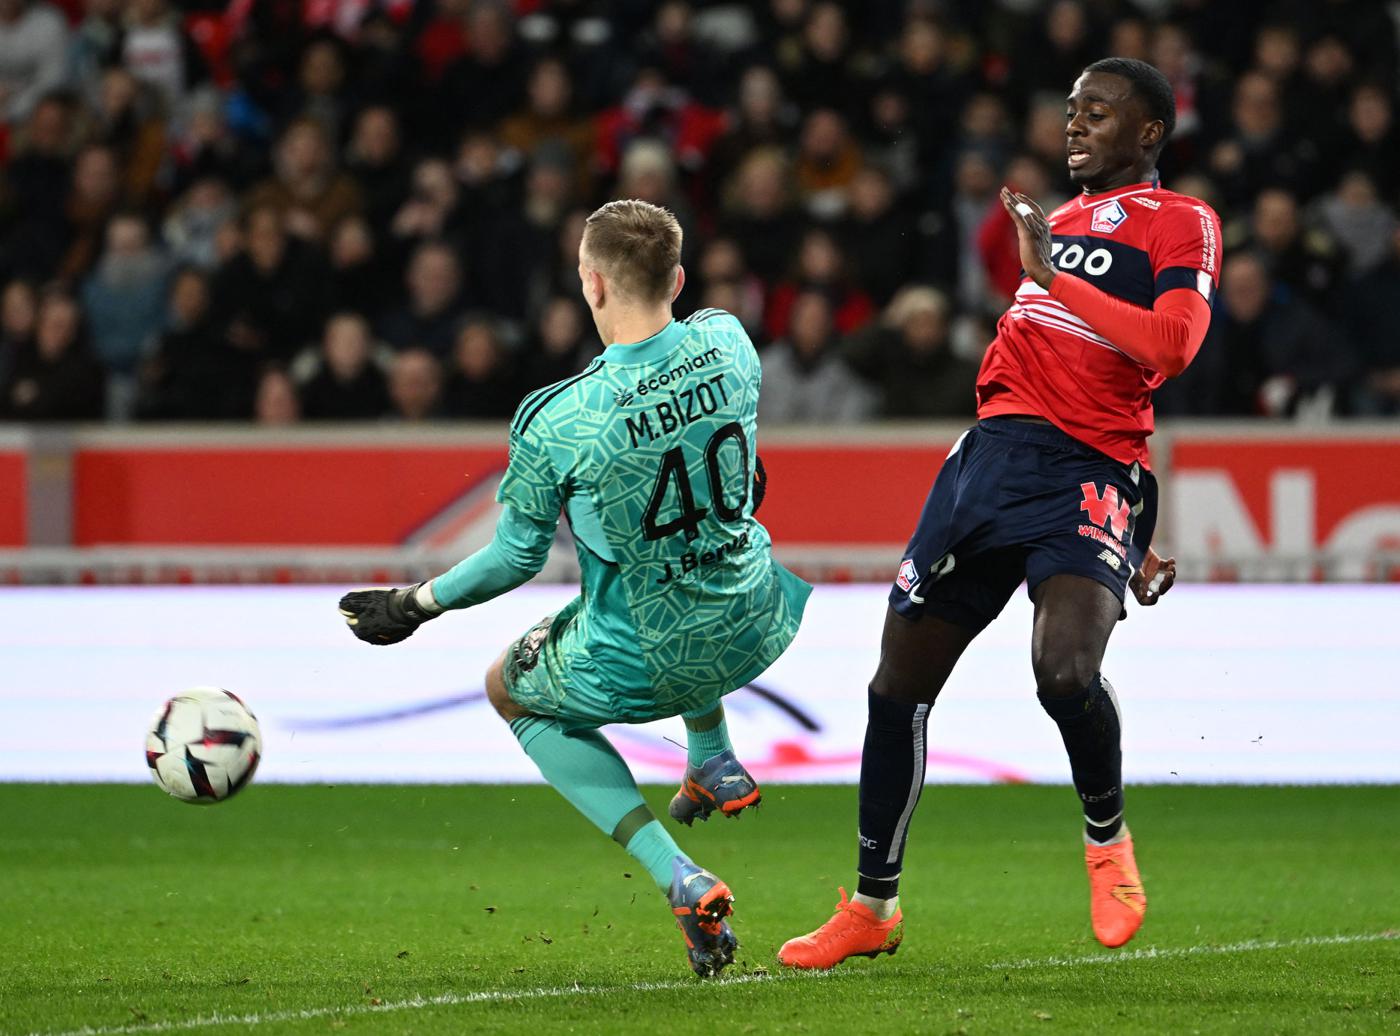 "Lille v Brest - 2-1. Mistrzostwa Francji, runda 25. Przegląd meczu, statystyki